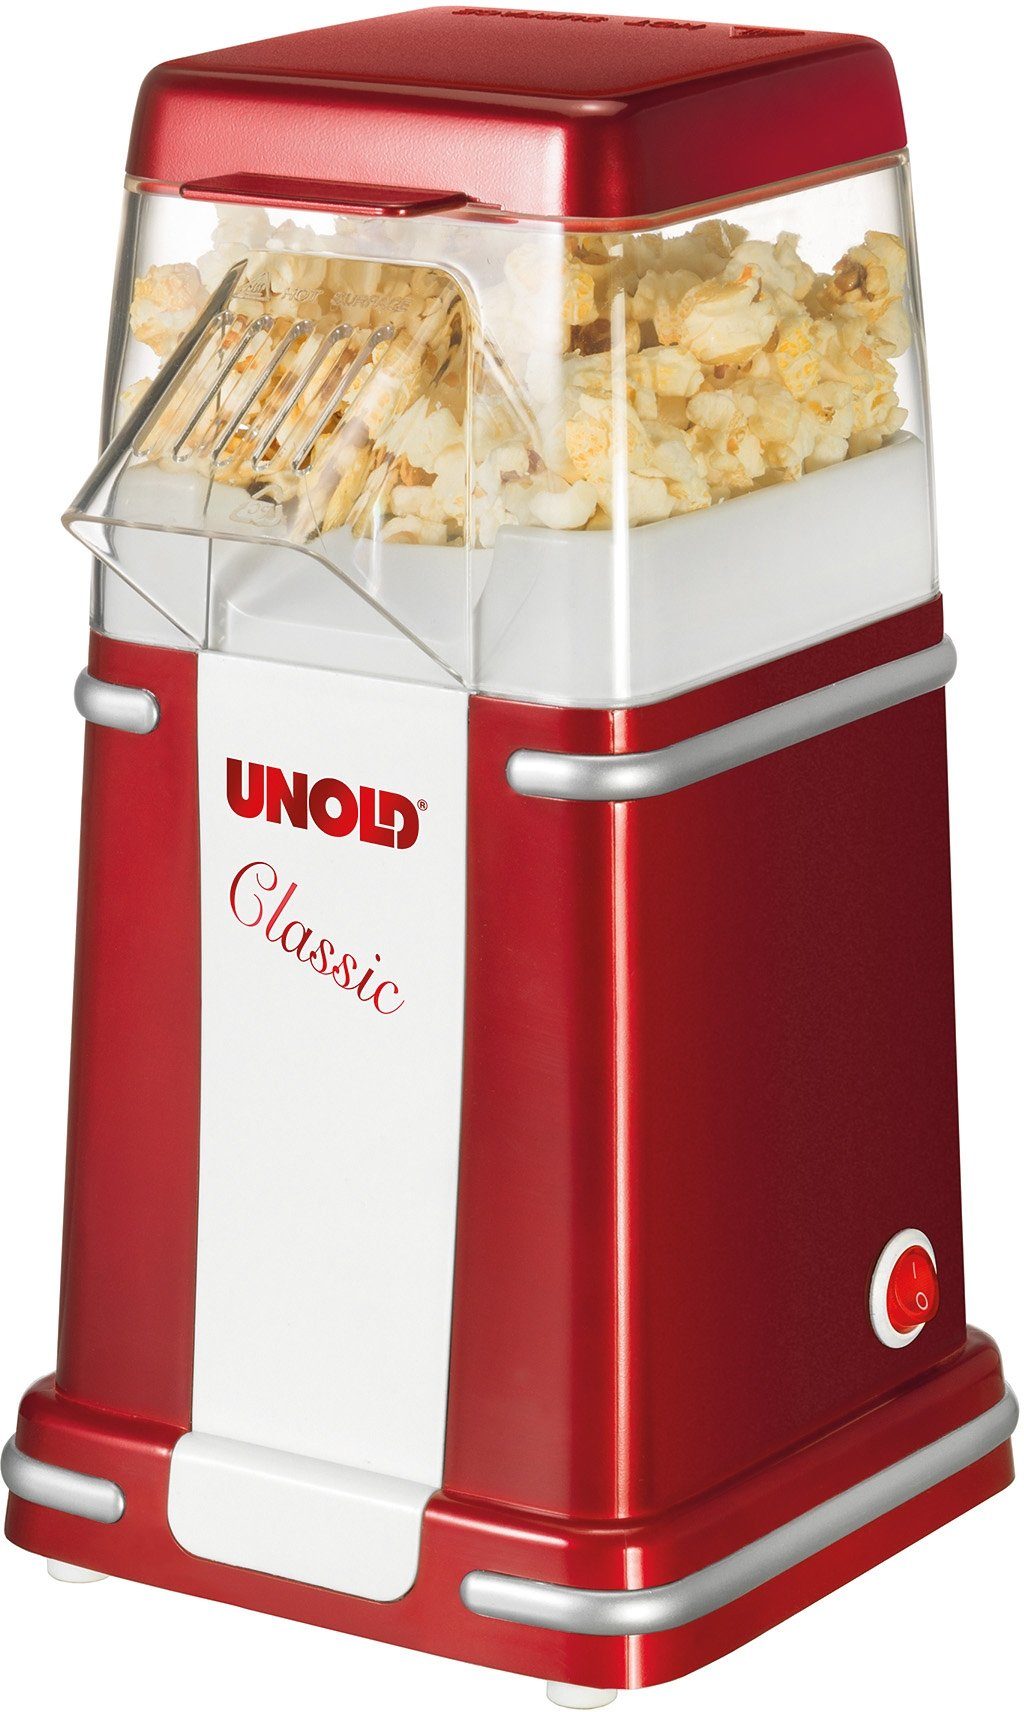 Unold Popcornmaschine Classic online kaufen | OTTO